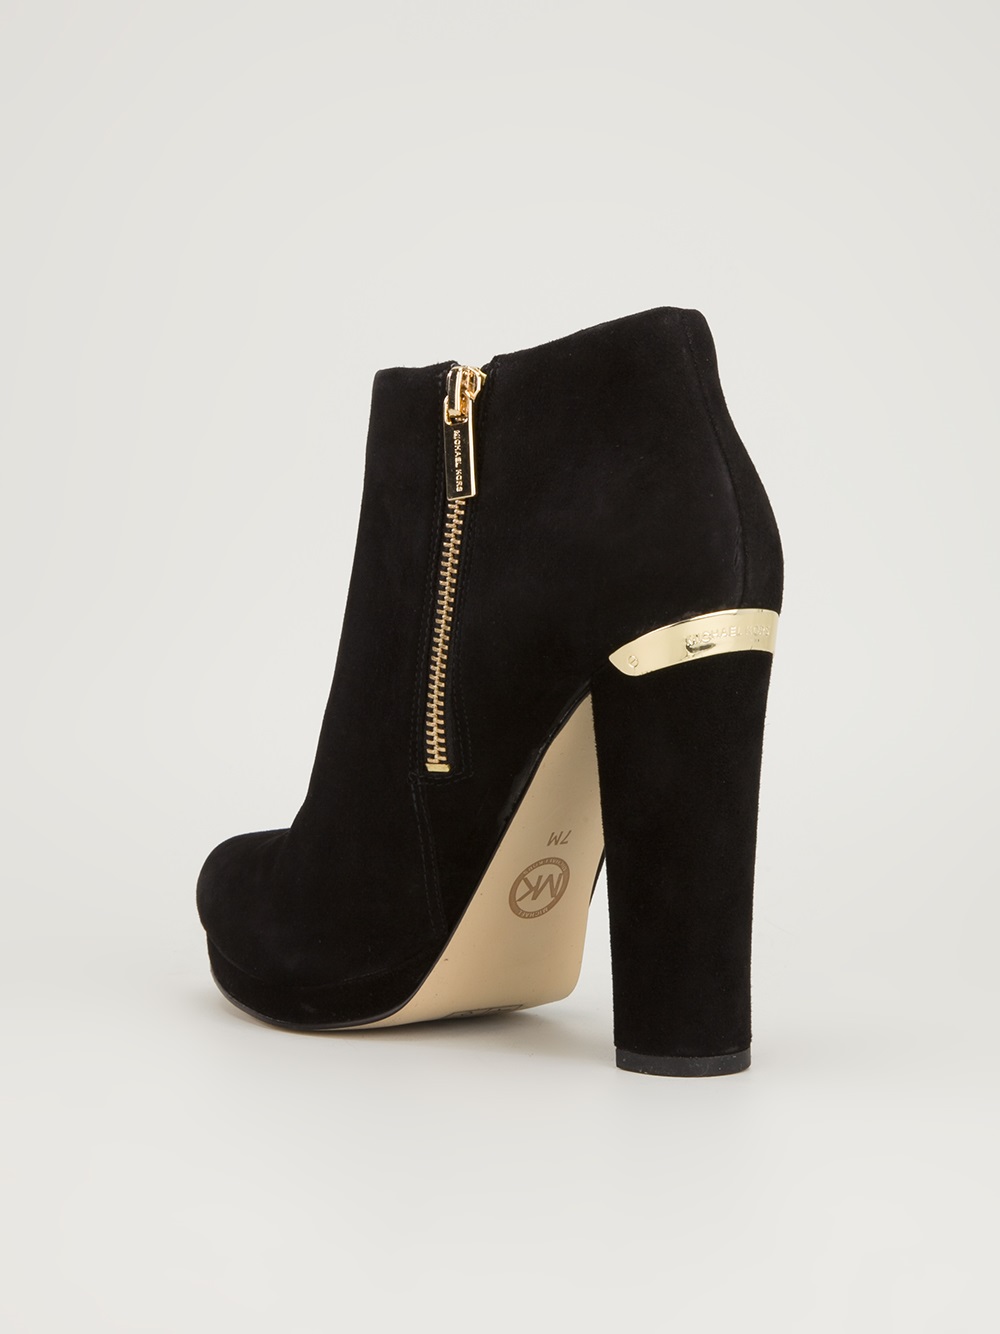 Michael Kors Black Suede Ankle Boots Factory Sale - benim.k12.tr 1690977468